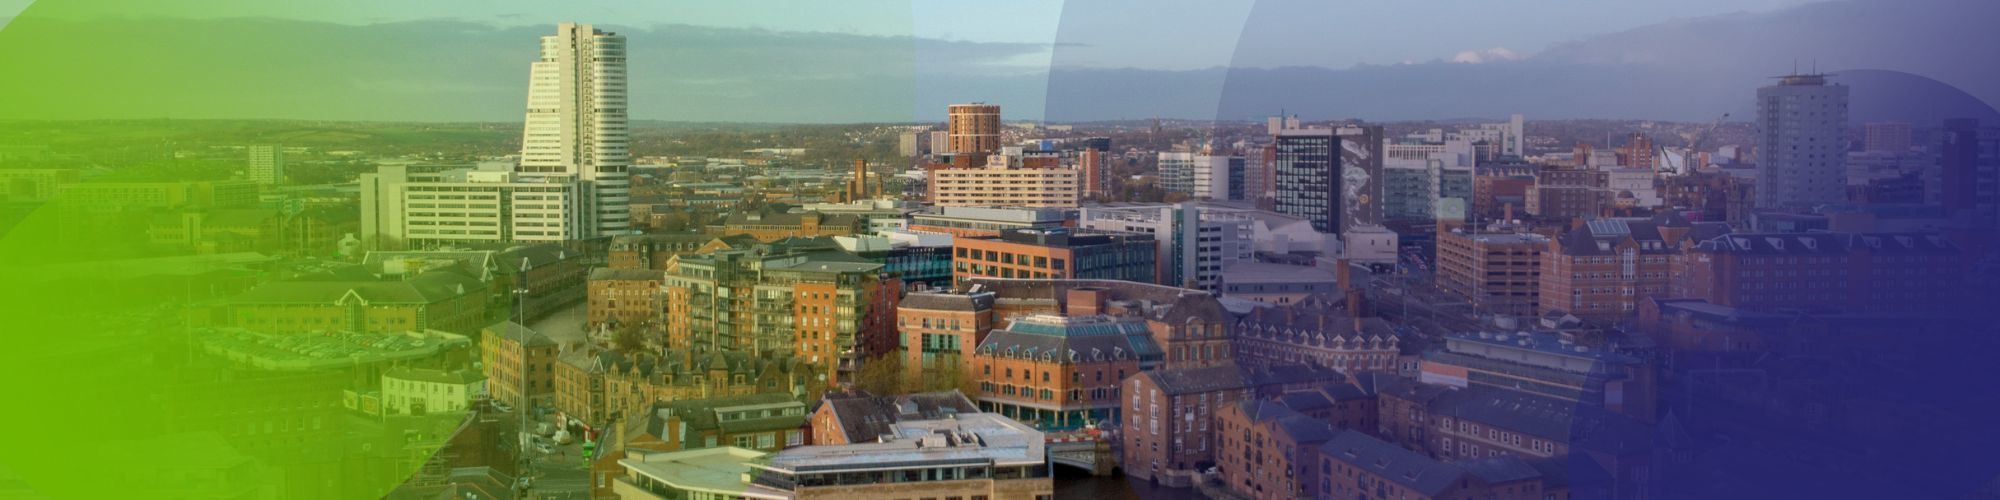 Leeds £50M office scheme gets green light